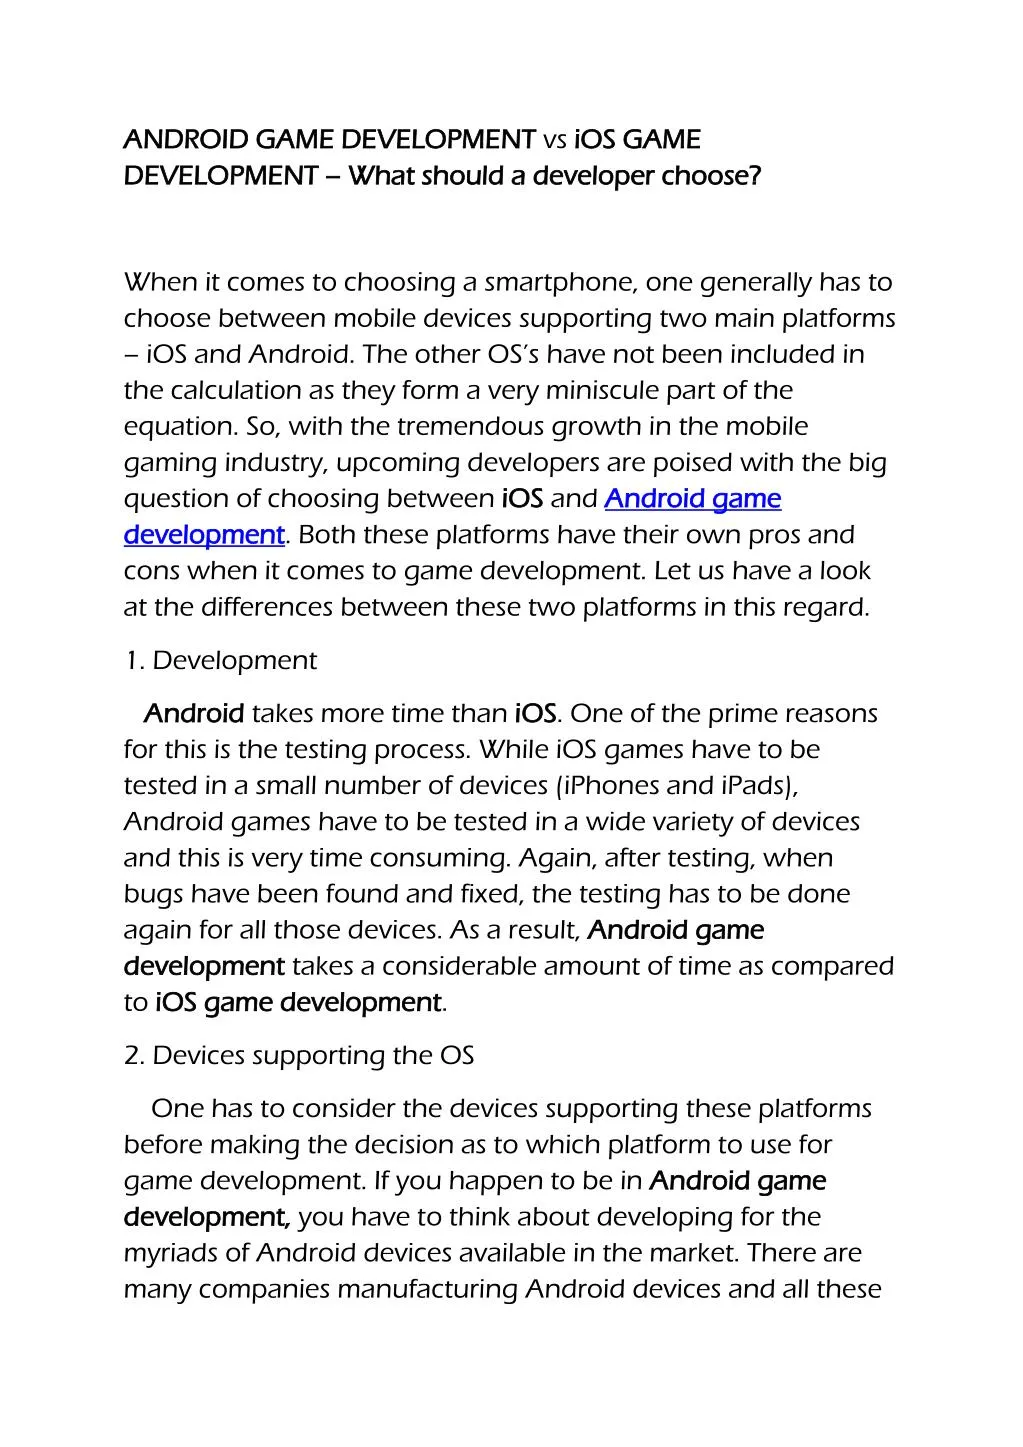 android game development android game development